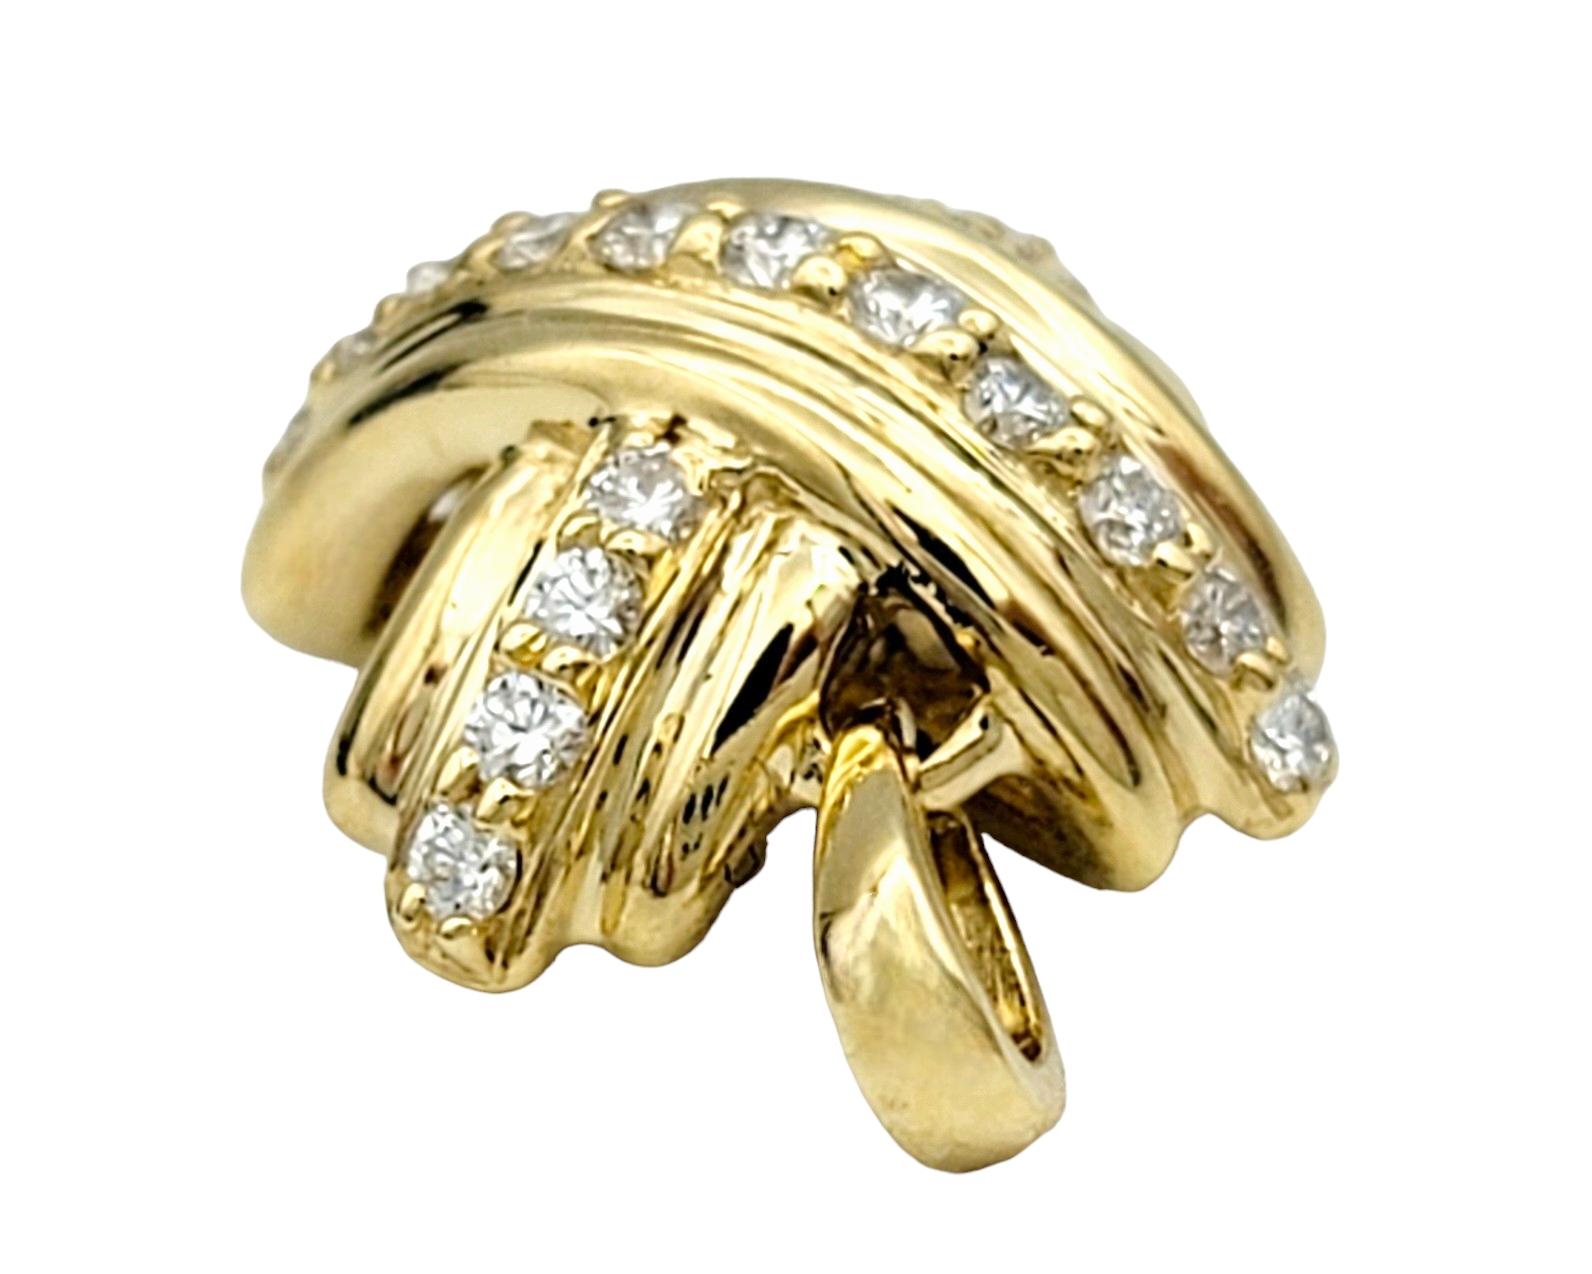 Cette magnifique pièce de Tiffany & Co. Le pendentif en diamants Signature X Design/One dégage une élégance et une sophistication intemporelles. Réalisé en luxueux or jaune 18 carats, ce pendentif arbore le motif X emblématique. Chaque ligne